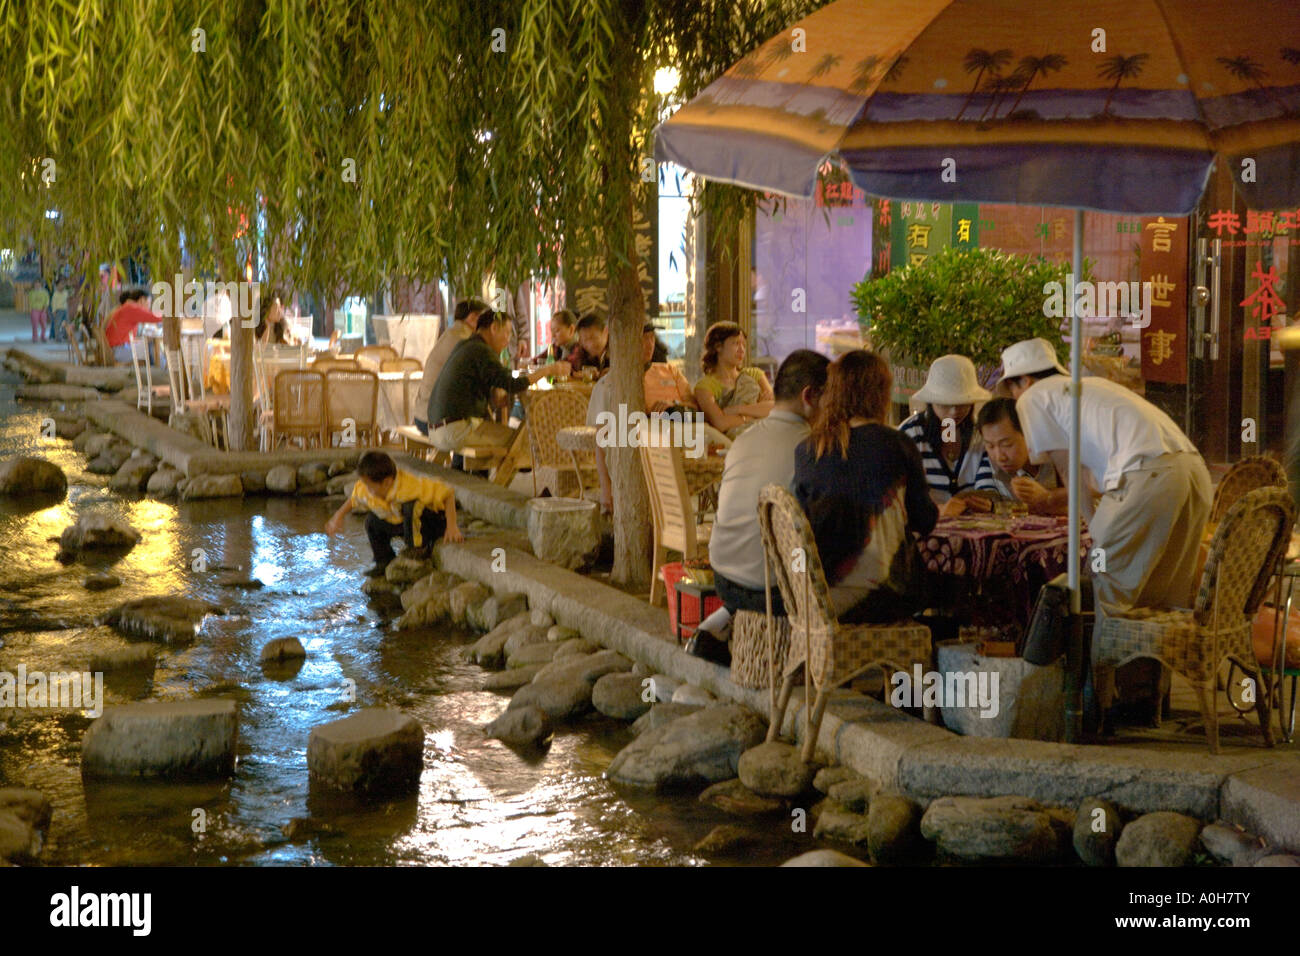 Chinese folks enjoying the good life at night, Dali, Yunnan, China Stock Photo